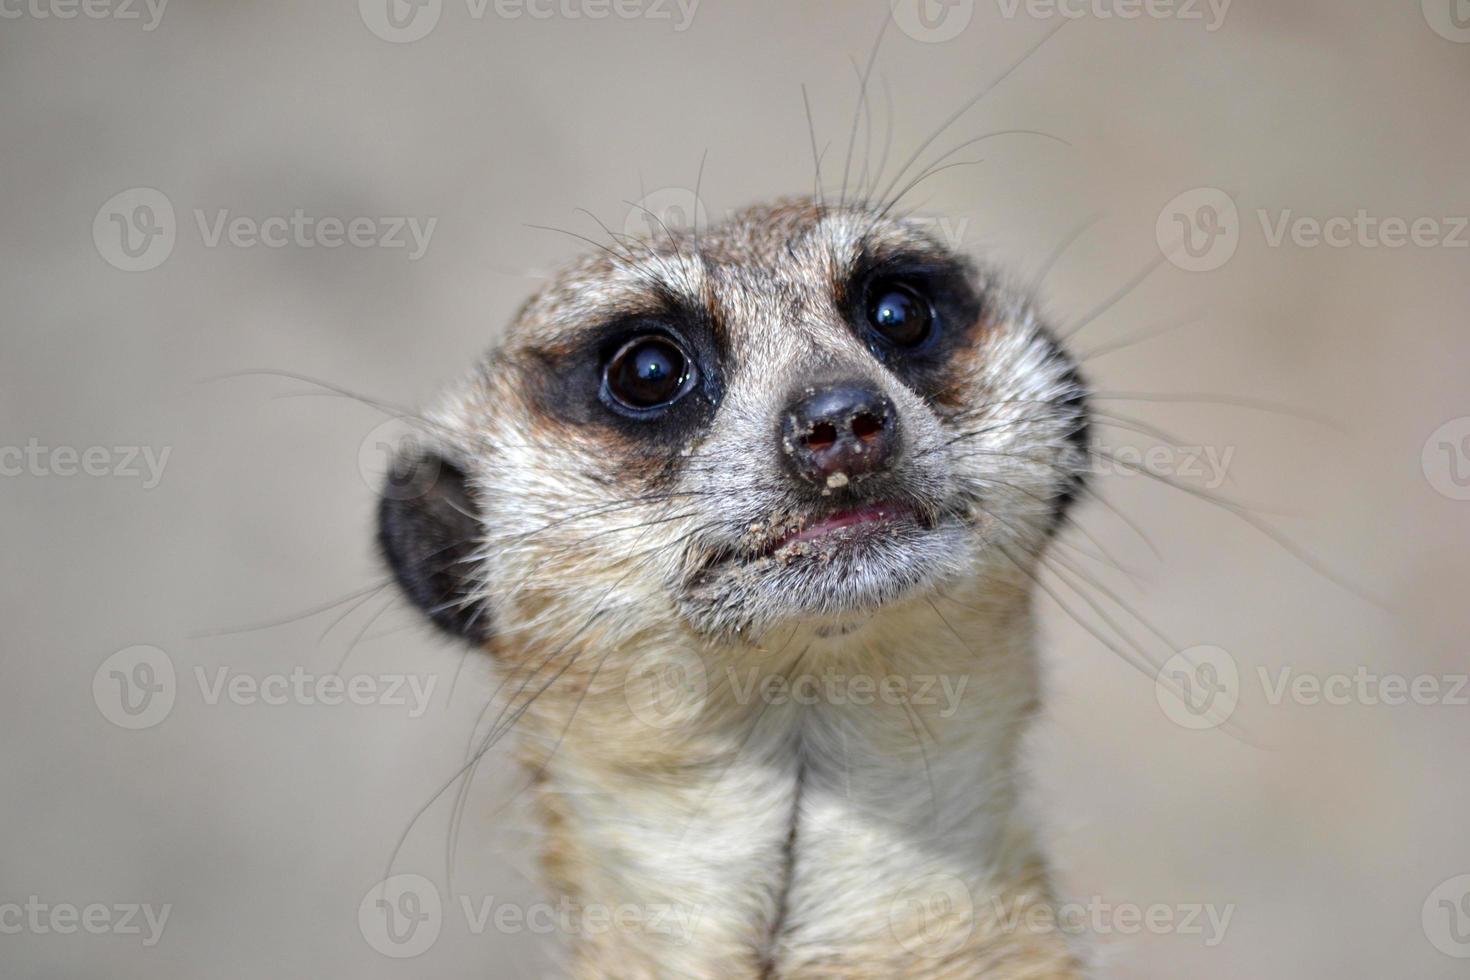 meerkat - huvud, närbild foto